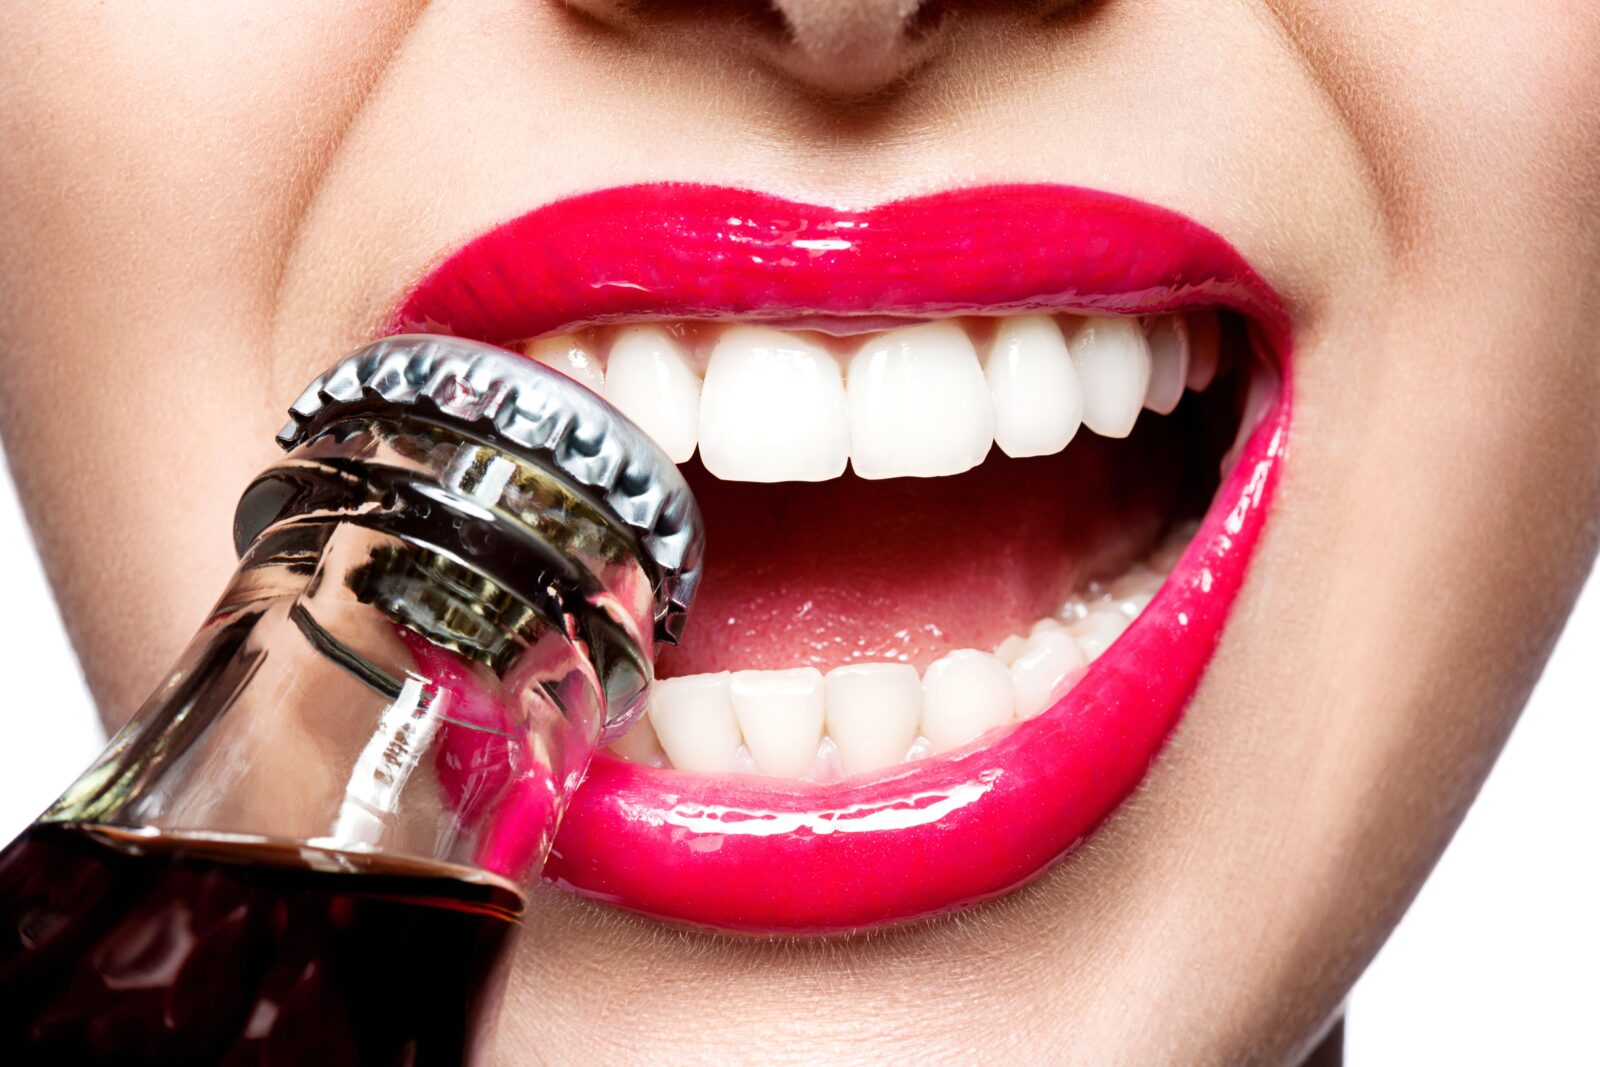 woman using teeth to open bottle